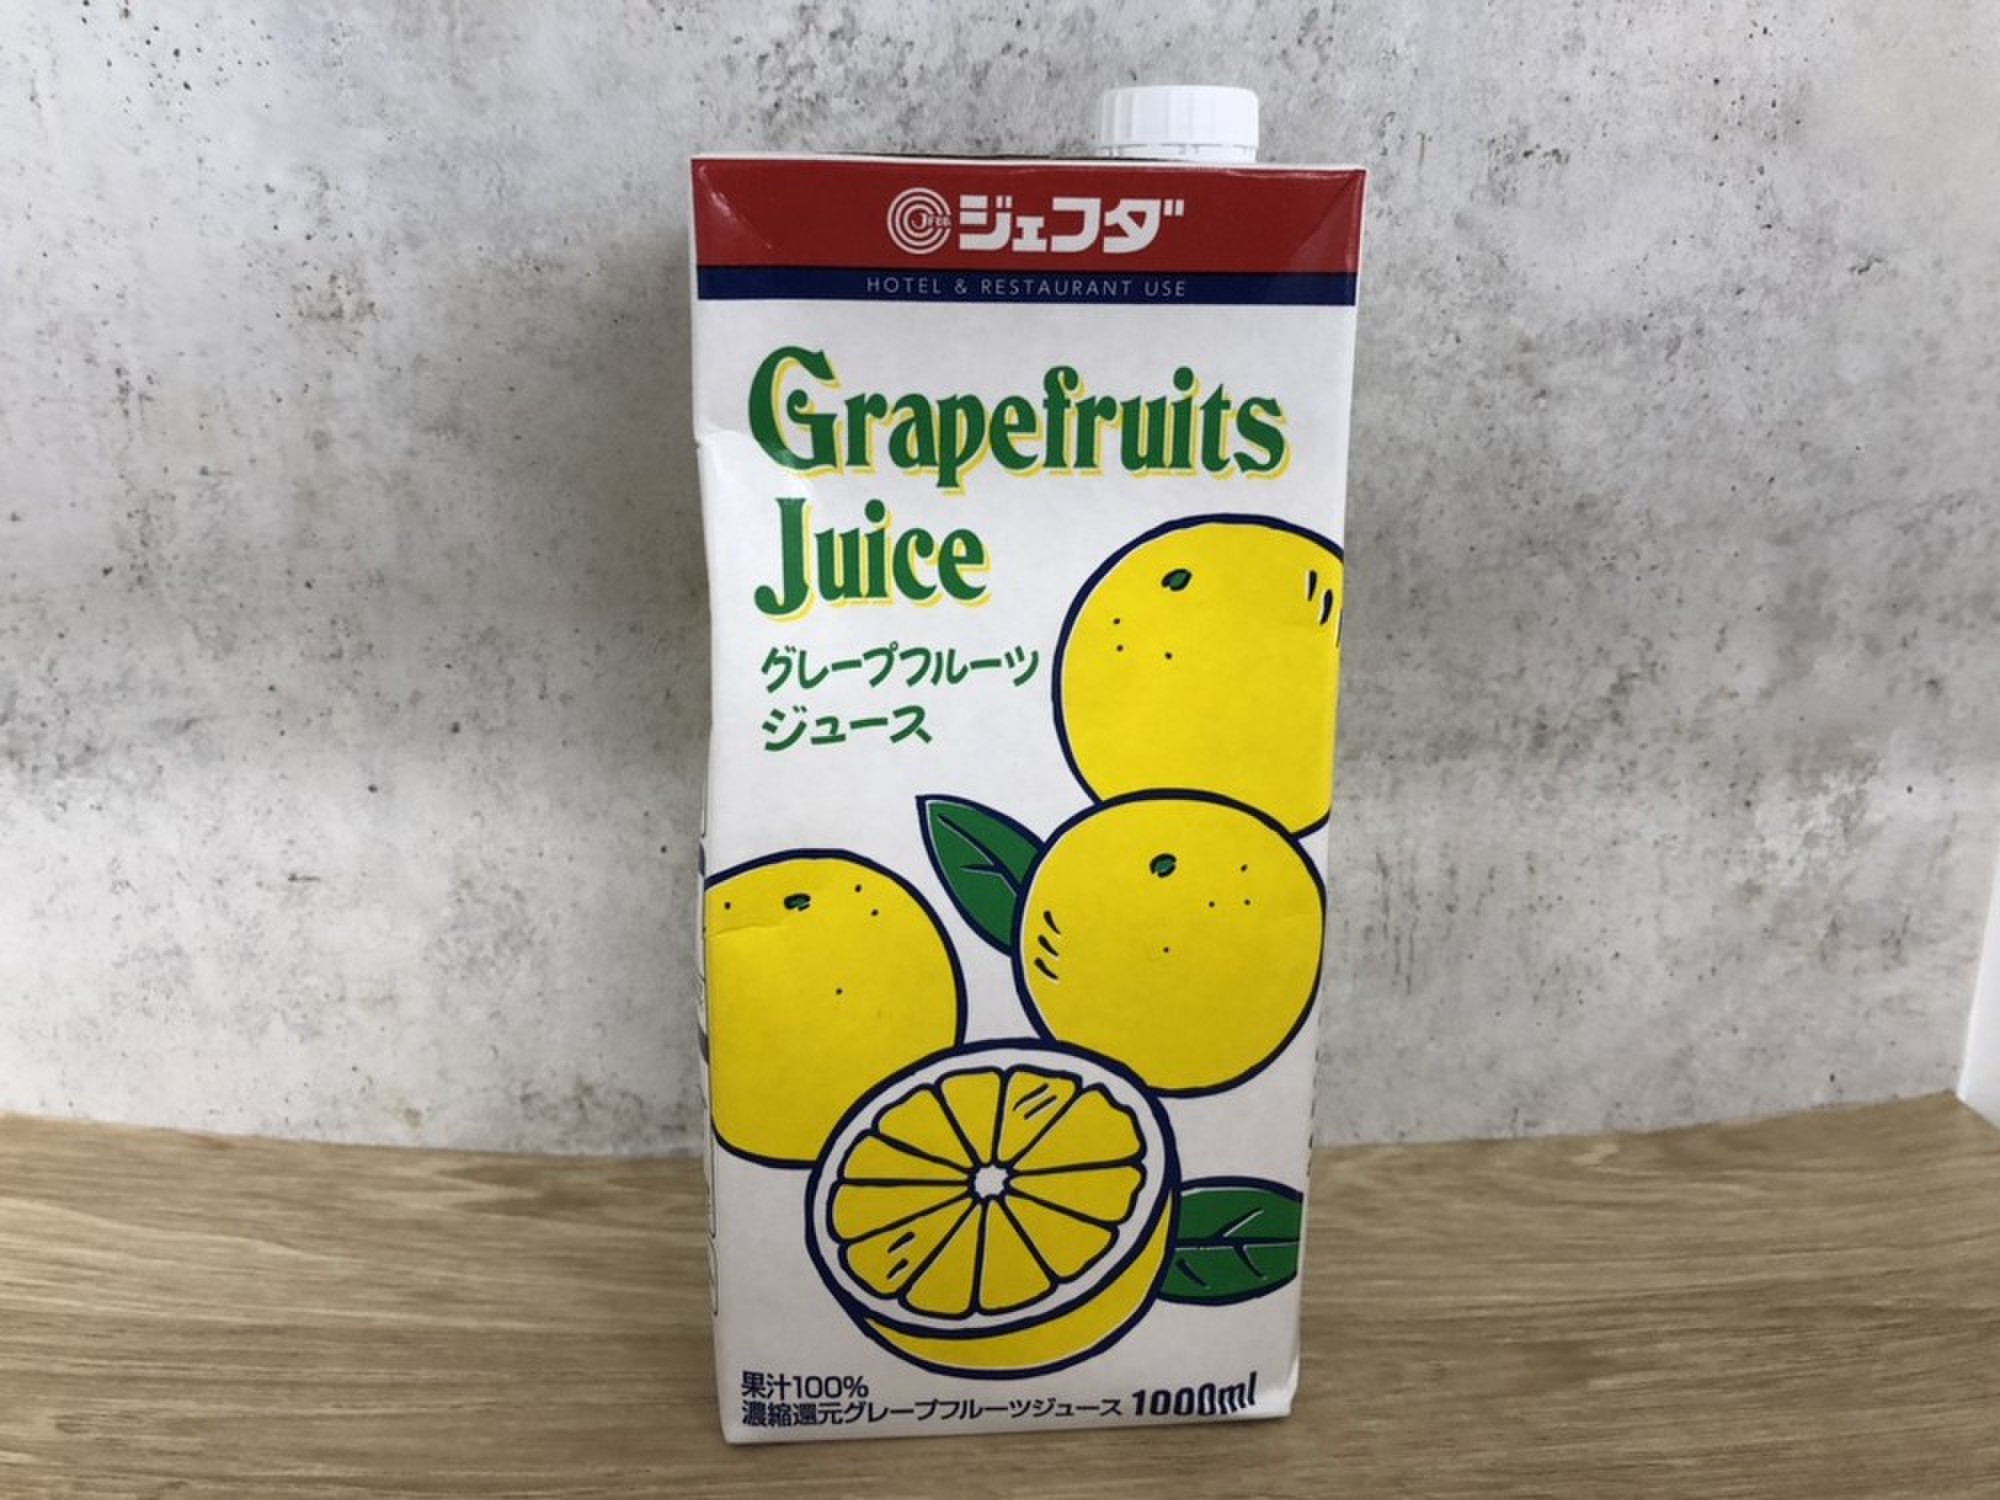 JFDA グレープフルーツジュース 1000ml | クックパッドマート - 毎日が楽しみになる、お買いもの。